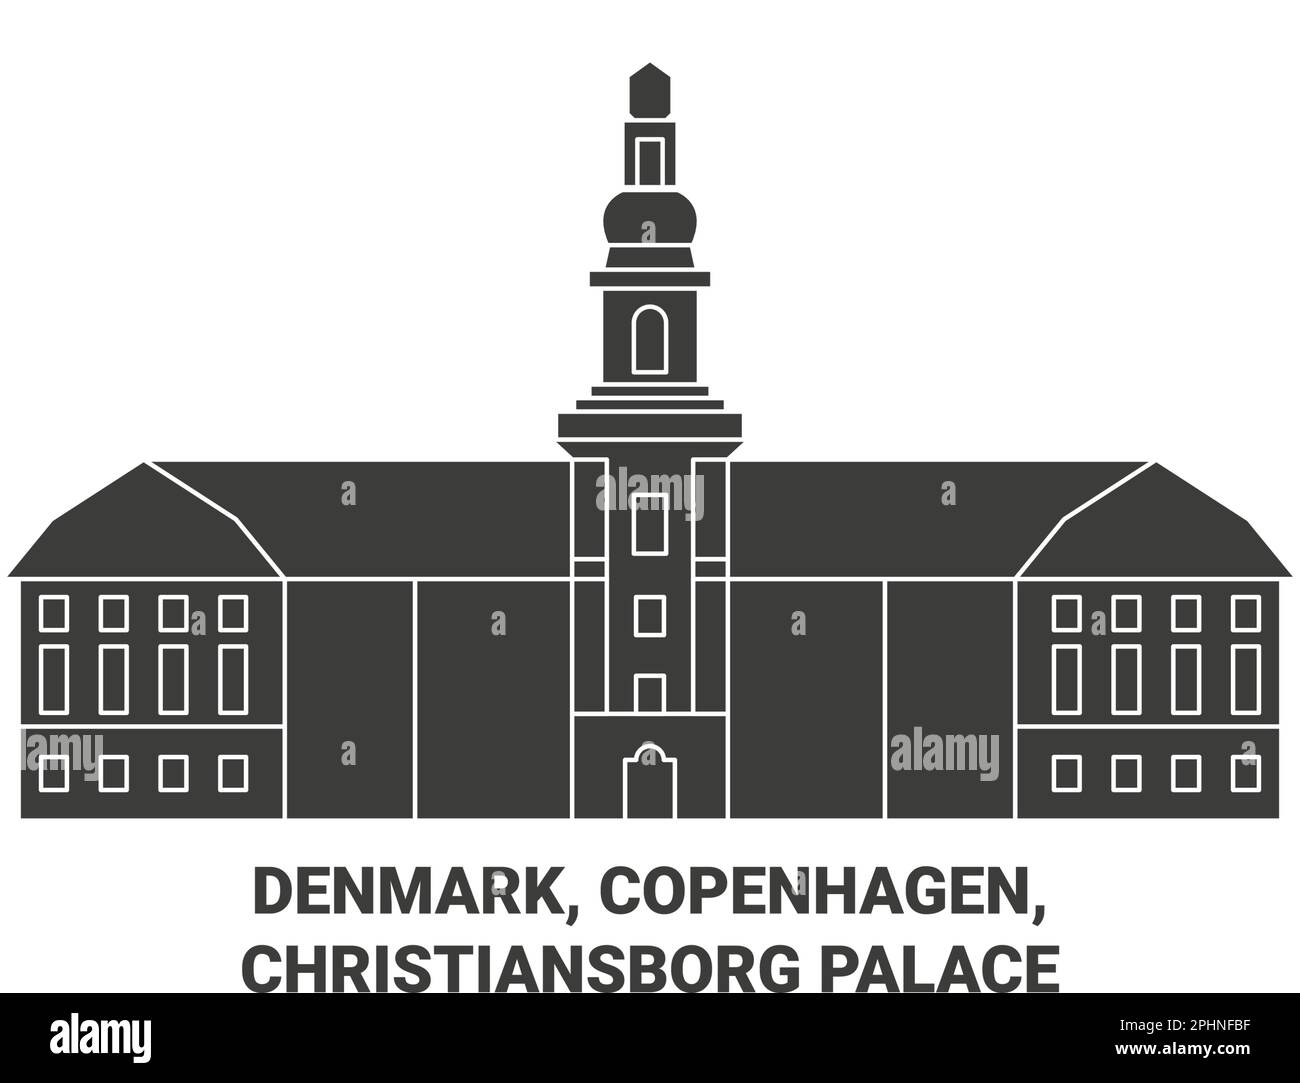 Denmark, Copenhagen, Christiansborg Palace travel landmark vector ...